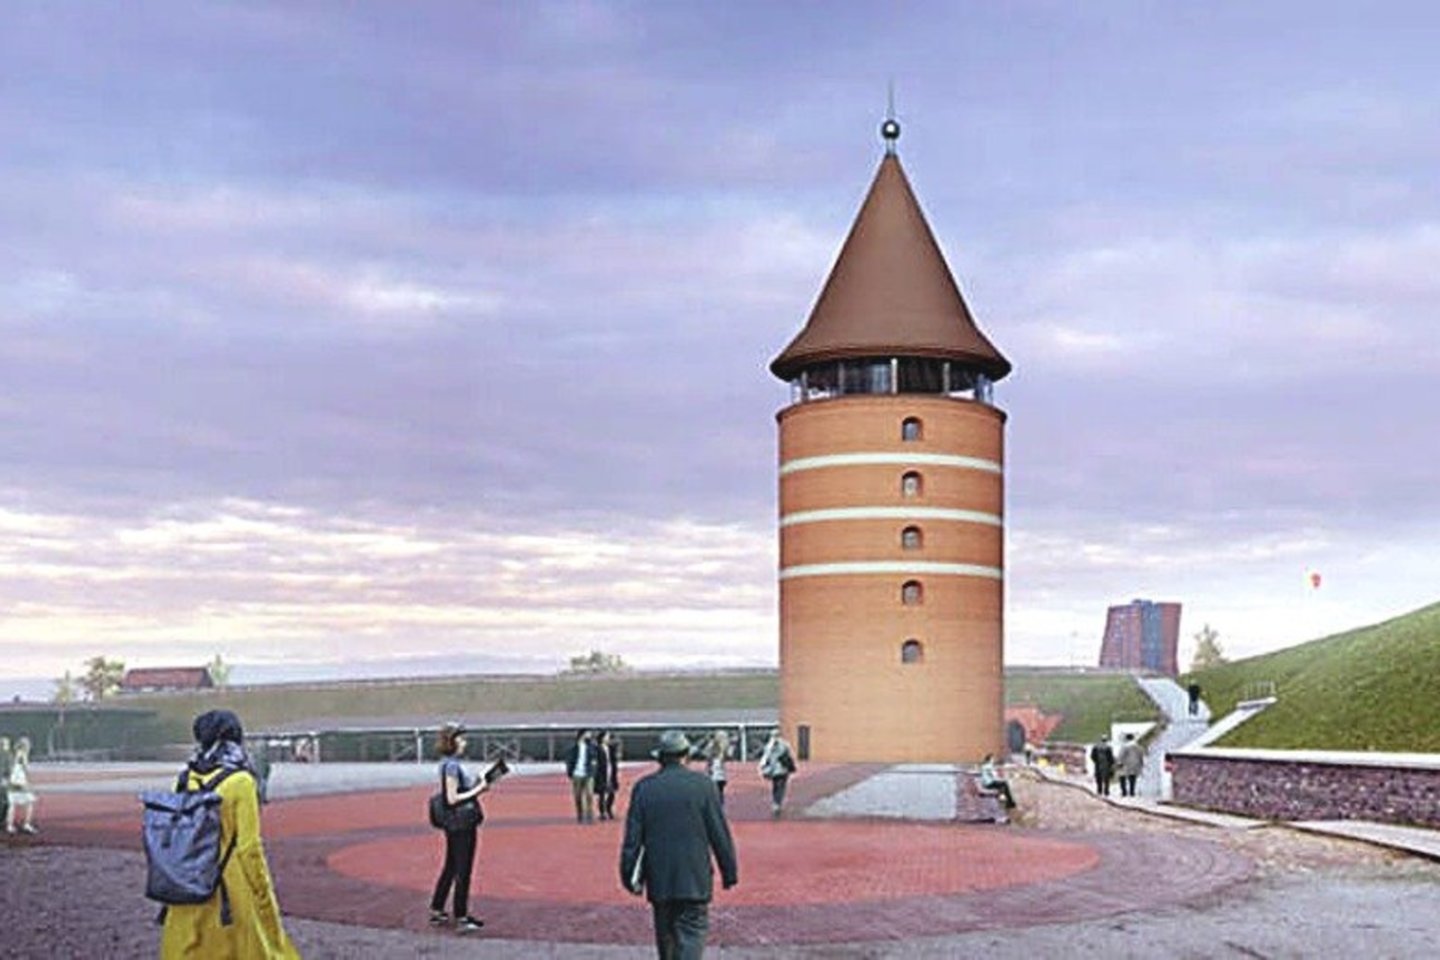  Uostamiesčio savivaldybė paskelbė viešąjį konkursą ir iki kovo 21 dienos laukia rangovų pasiūlymų, kaip atkurti didįjį Klaipėdos pilies bokštą. Tikimasi, kad bokštas iškils po dvejų metų.